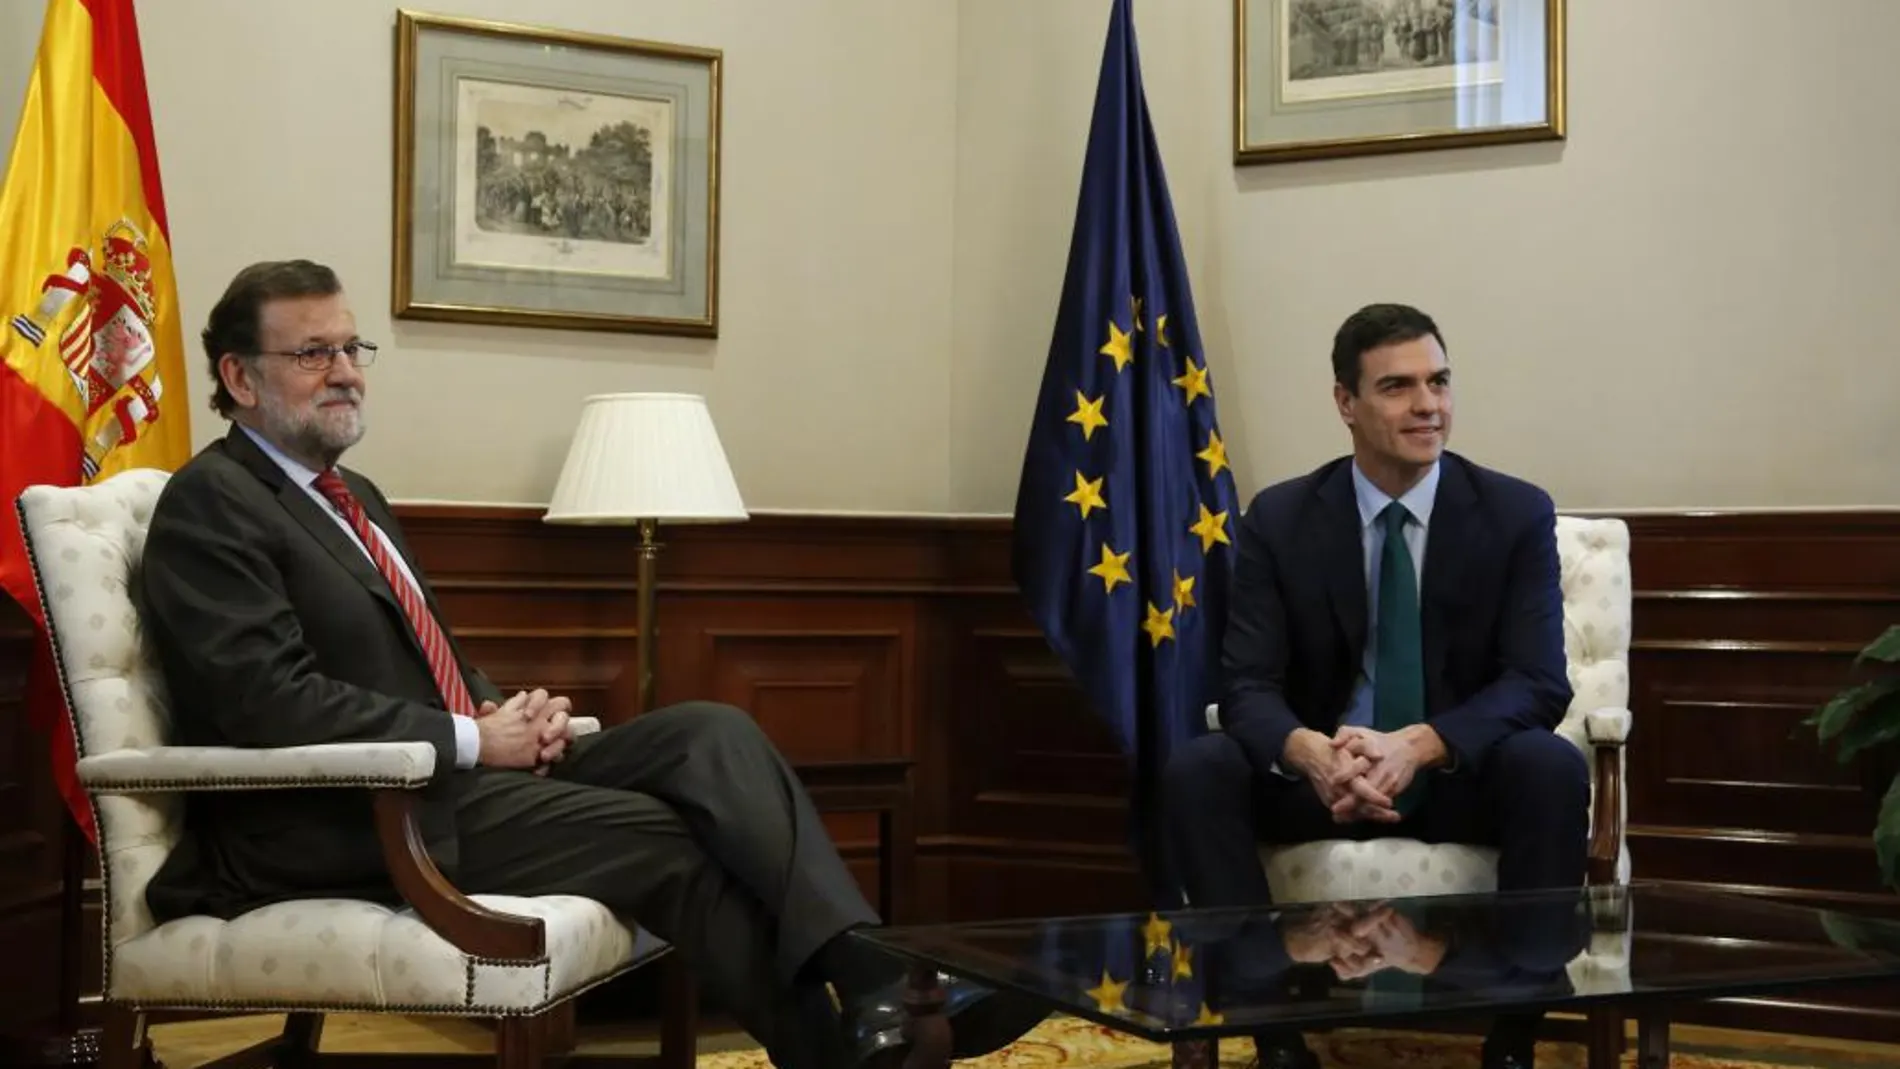 Mariano Rajoy y Pedro Sánchez, durante su reunión en el Congreso de los Diputados